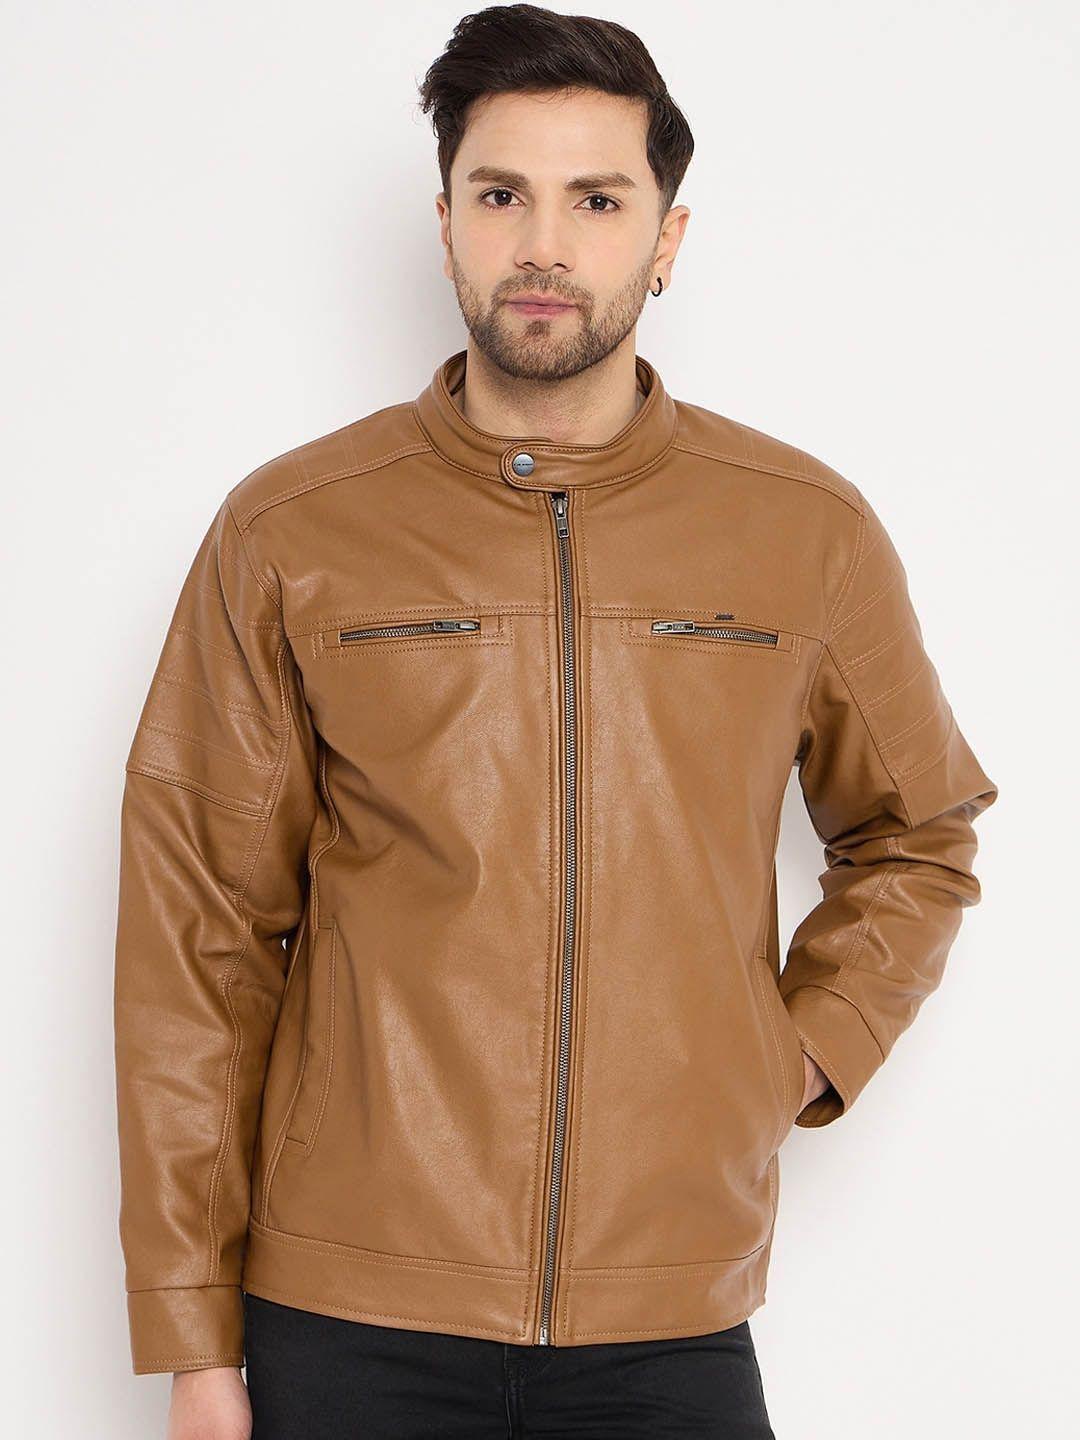 okane long sleeves leather biker jacket